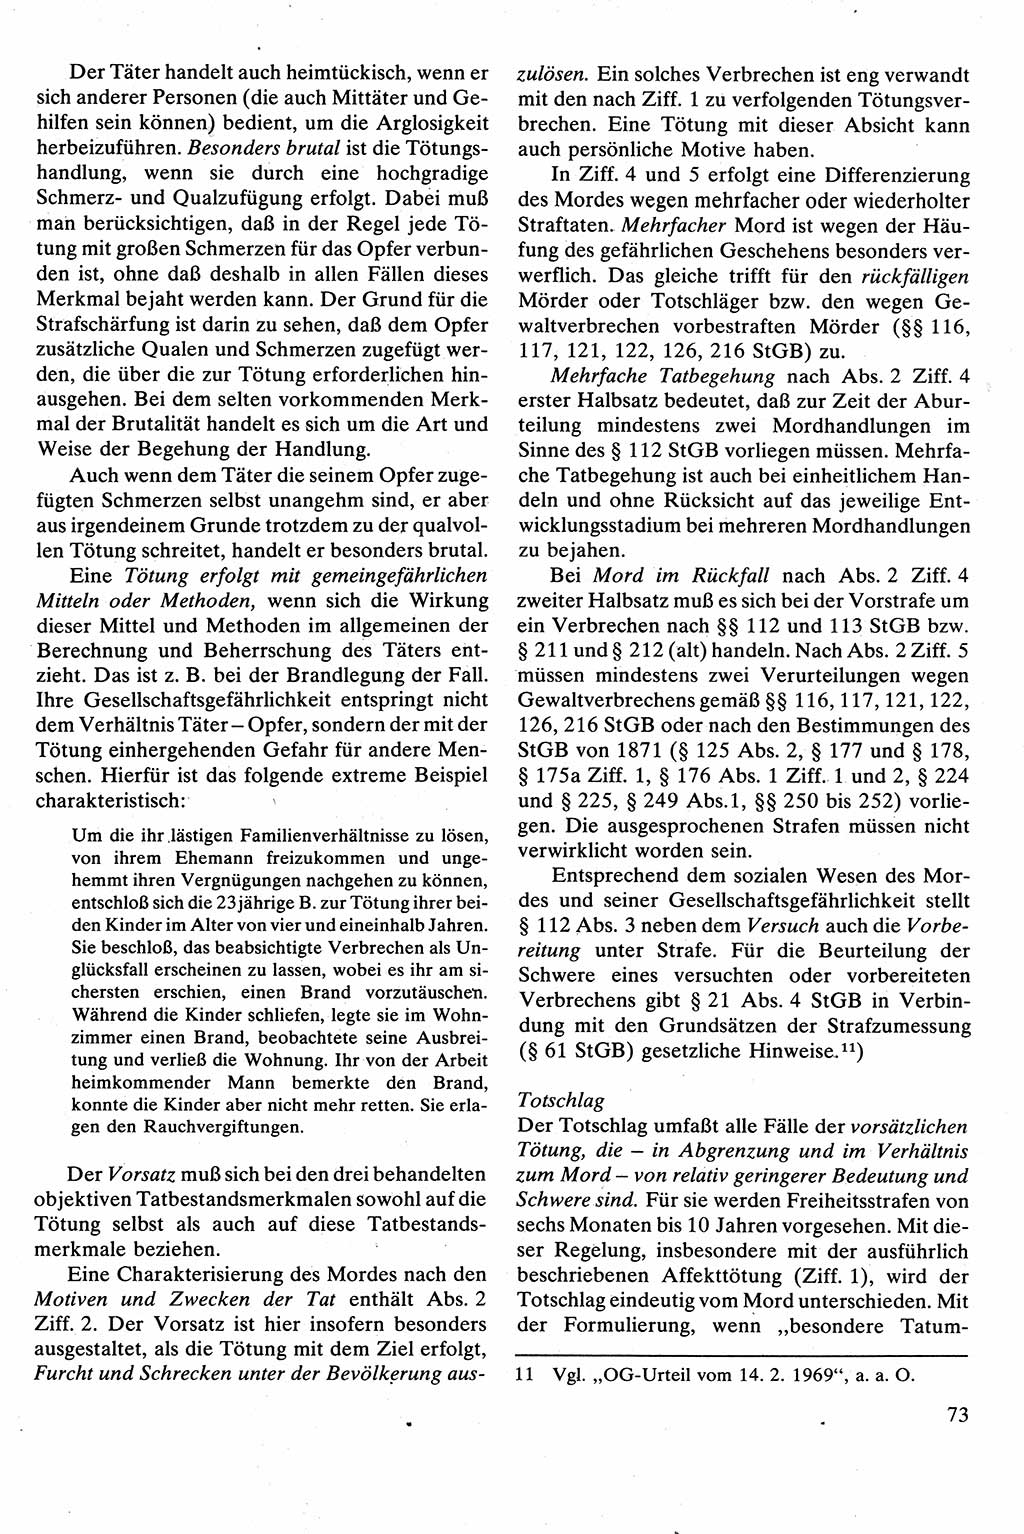 Strafrecht [Deutsche Demokratische Republik (DDR)], Besonderer Teil, Lehrbuch 1981, Seite 73 (Strafr. DDR BT Lb. 1981, S. 73)